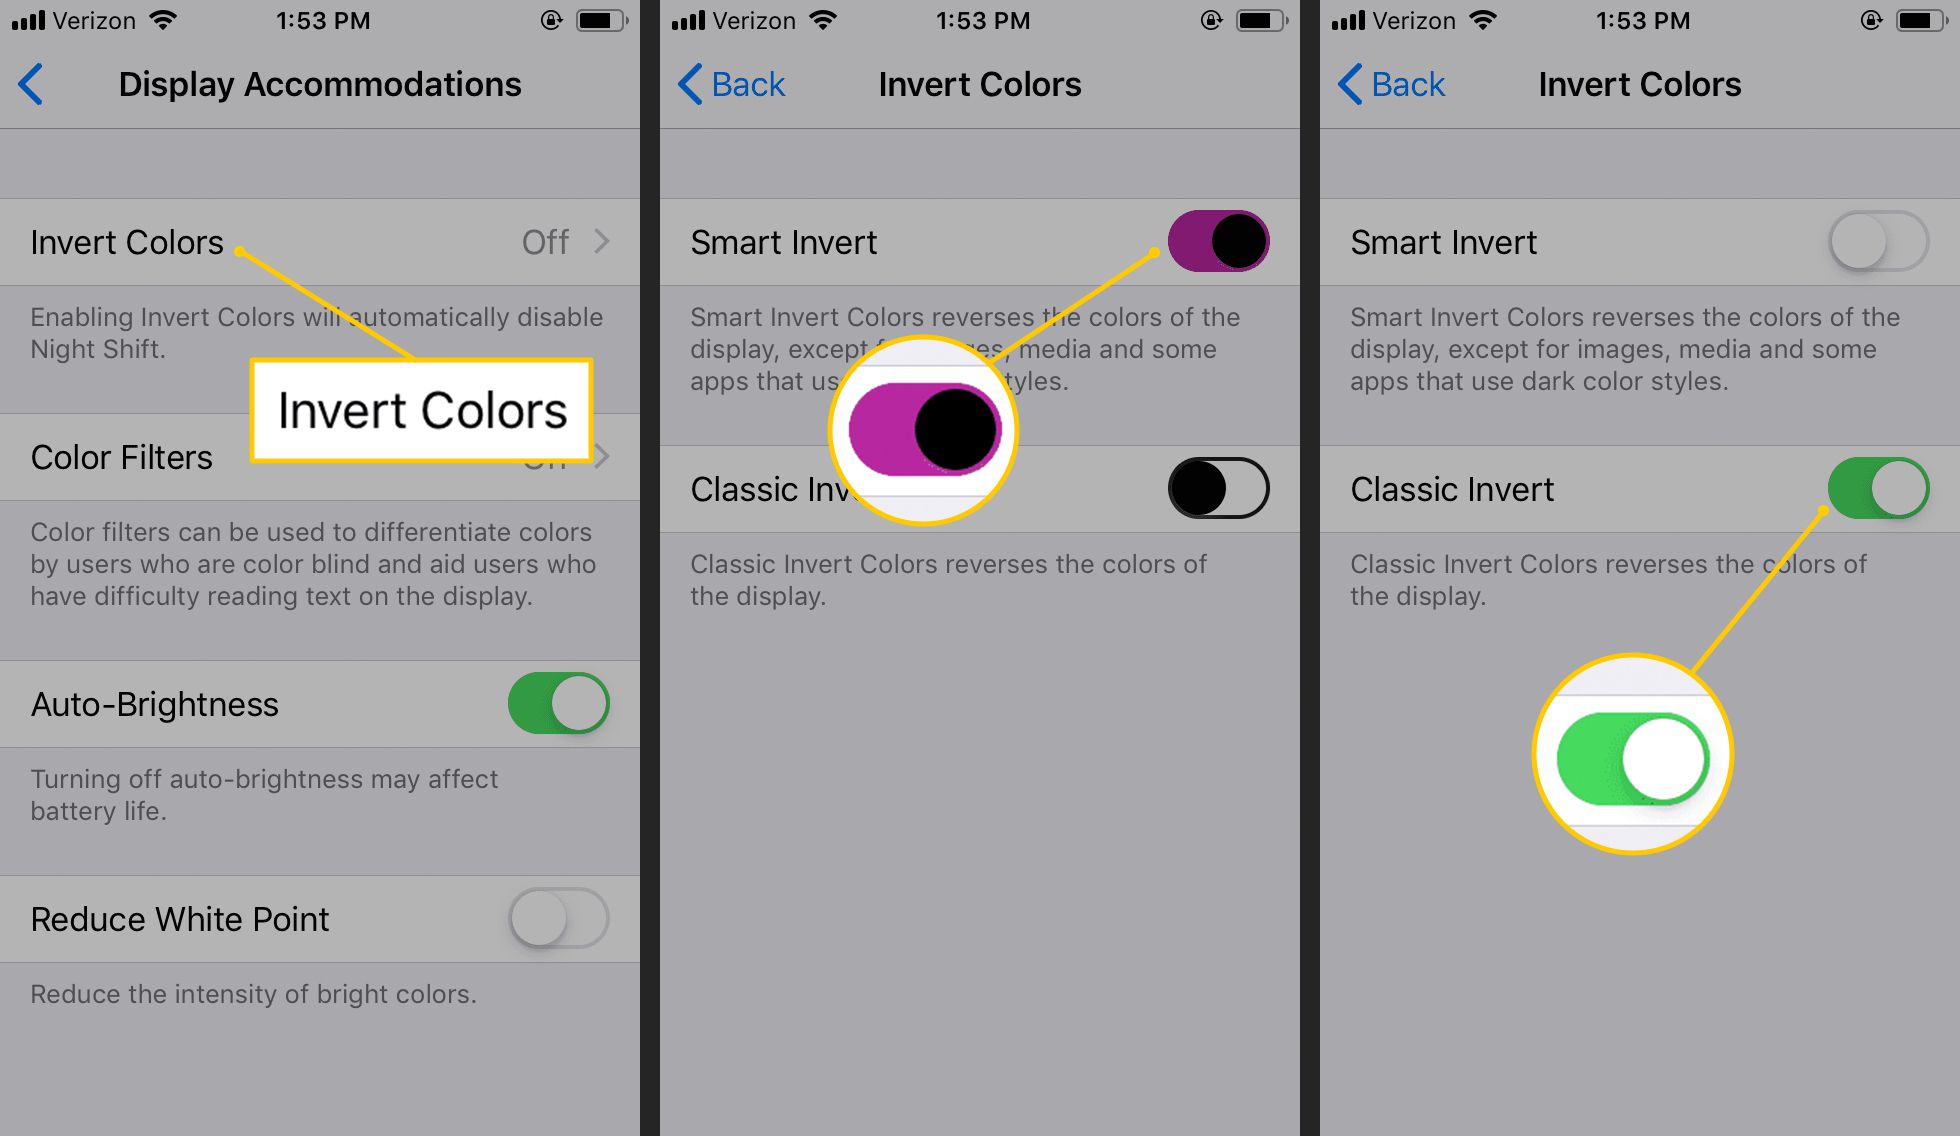 Invertera färger, Smart Invert, Classic Invert i iOS-inställningar